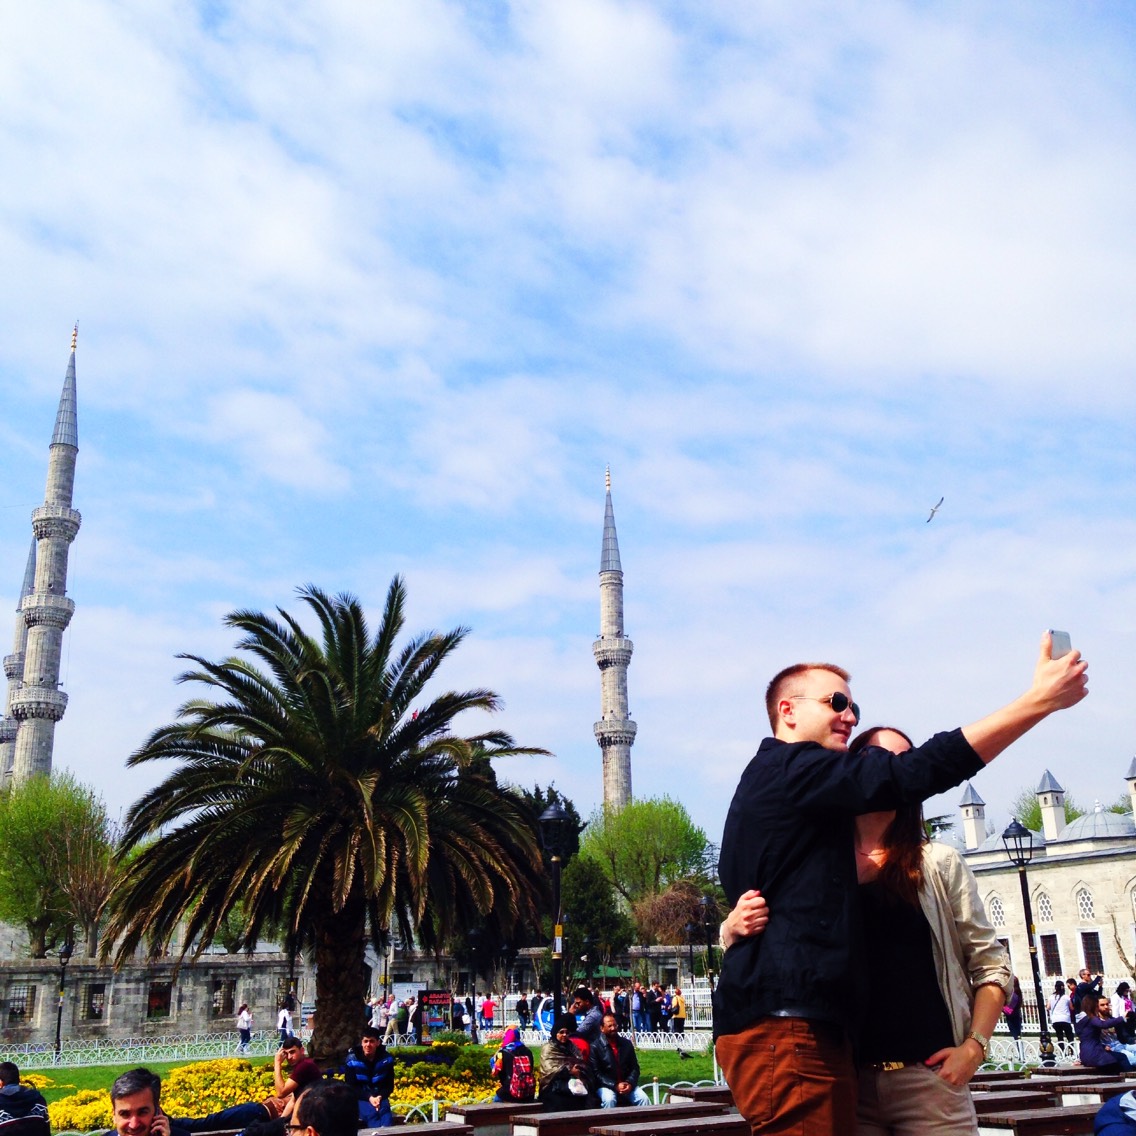 这是土耳其此行最喜欢的地方之一。广场的中轴线完美连接了索菲亚大教堂和蓝